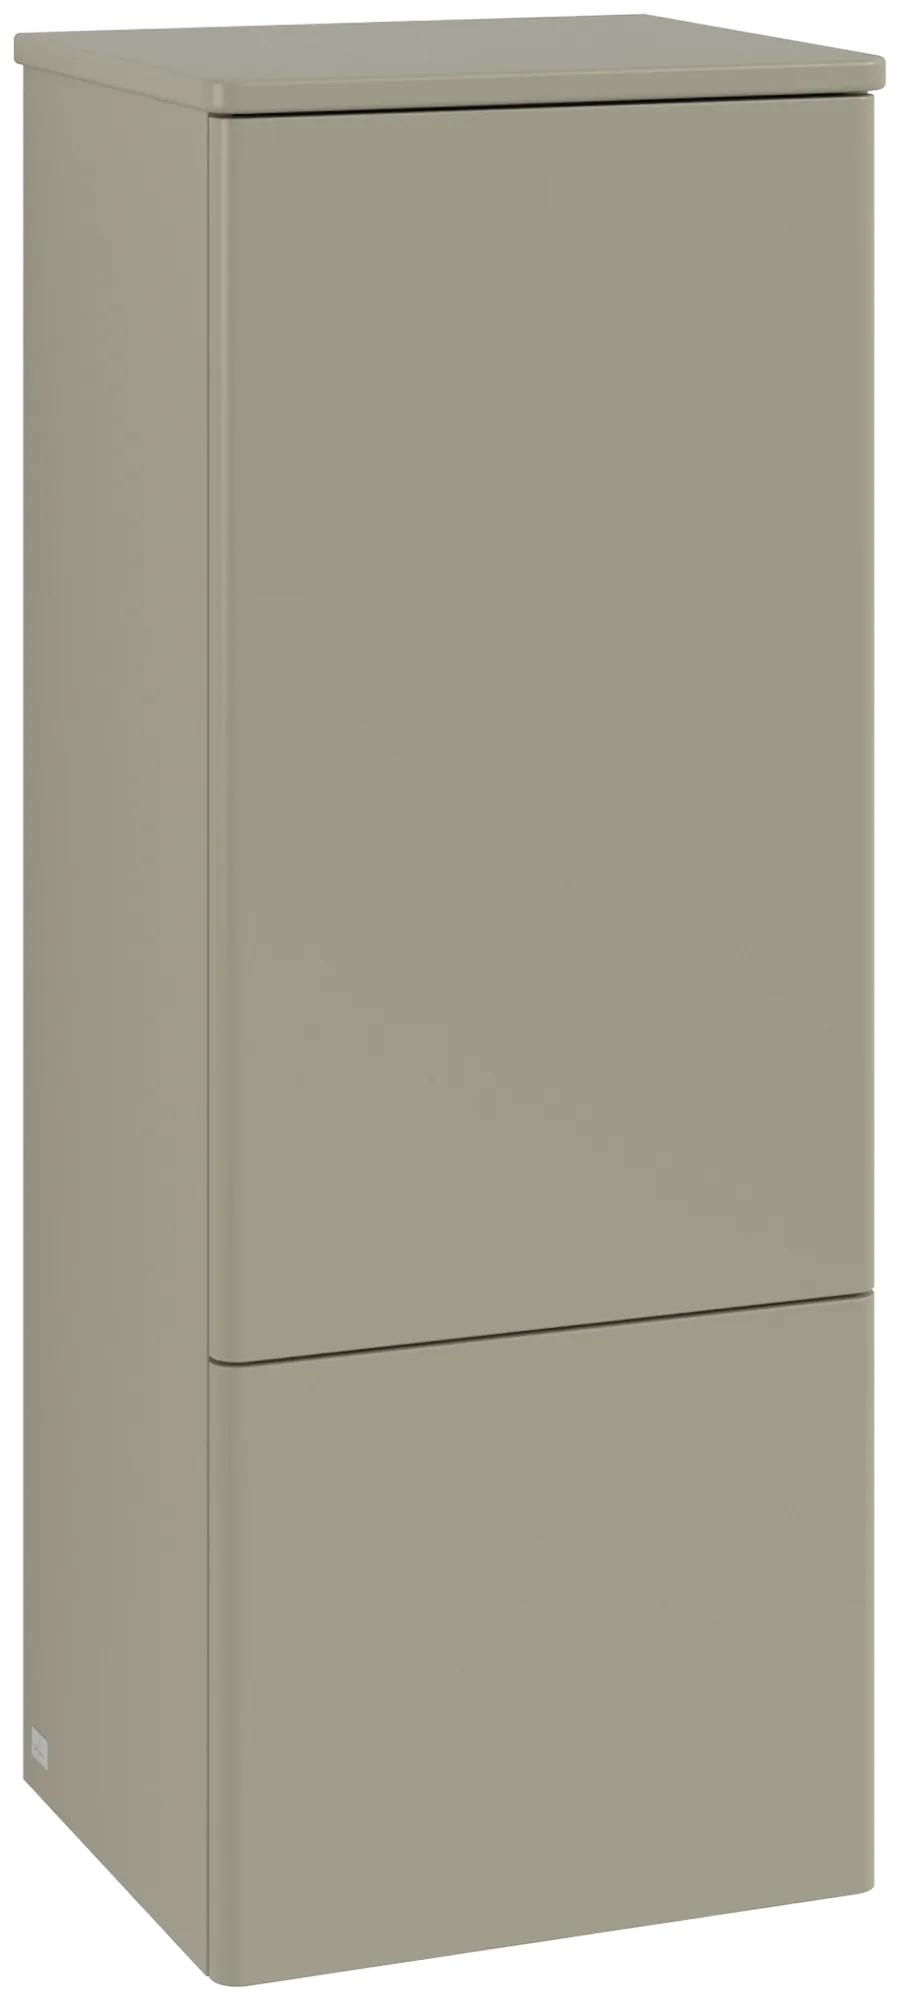 Bild von VILLEROY BOCH Antao Mittelschrank, 1 Tür, 414 x 1039 x 356 mm, Front ohne Struktur, Stone Grey Matt Lacquer / Stone Grey Matt Lacquer #L43000HK